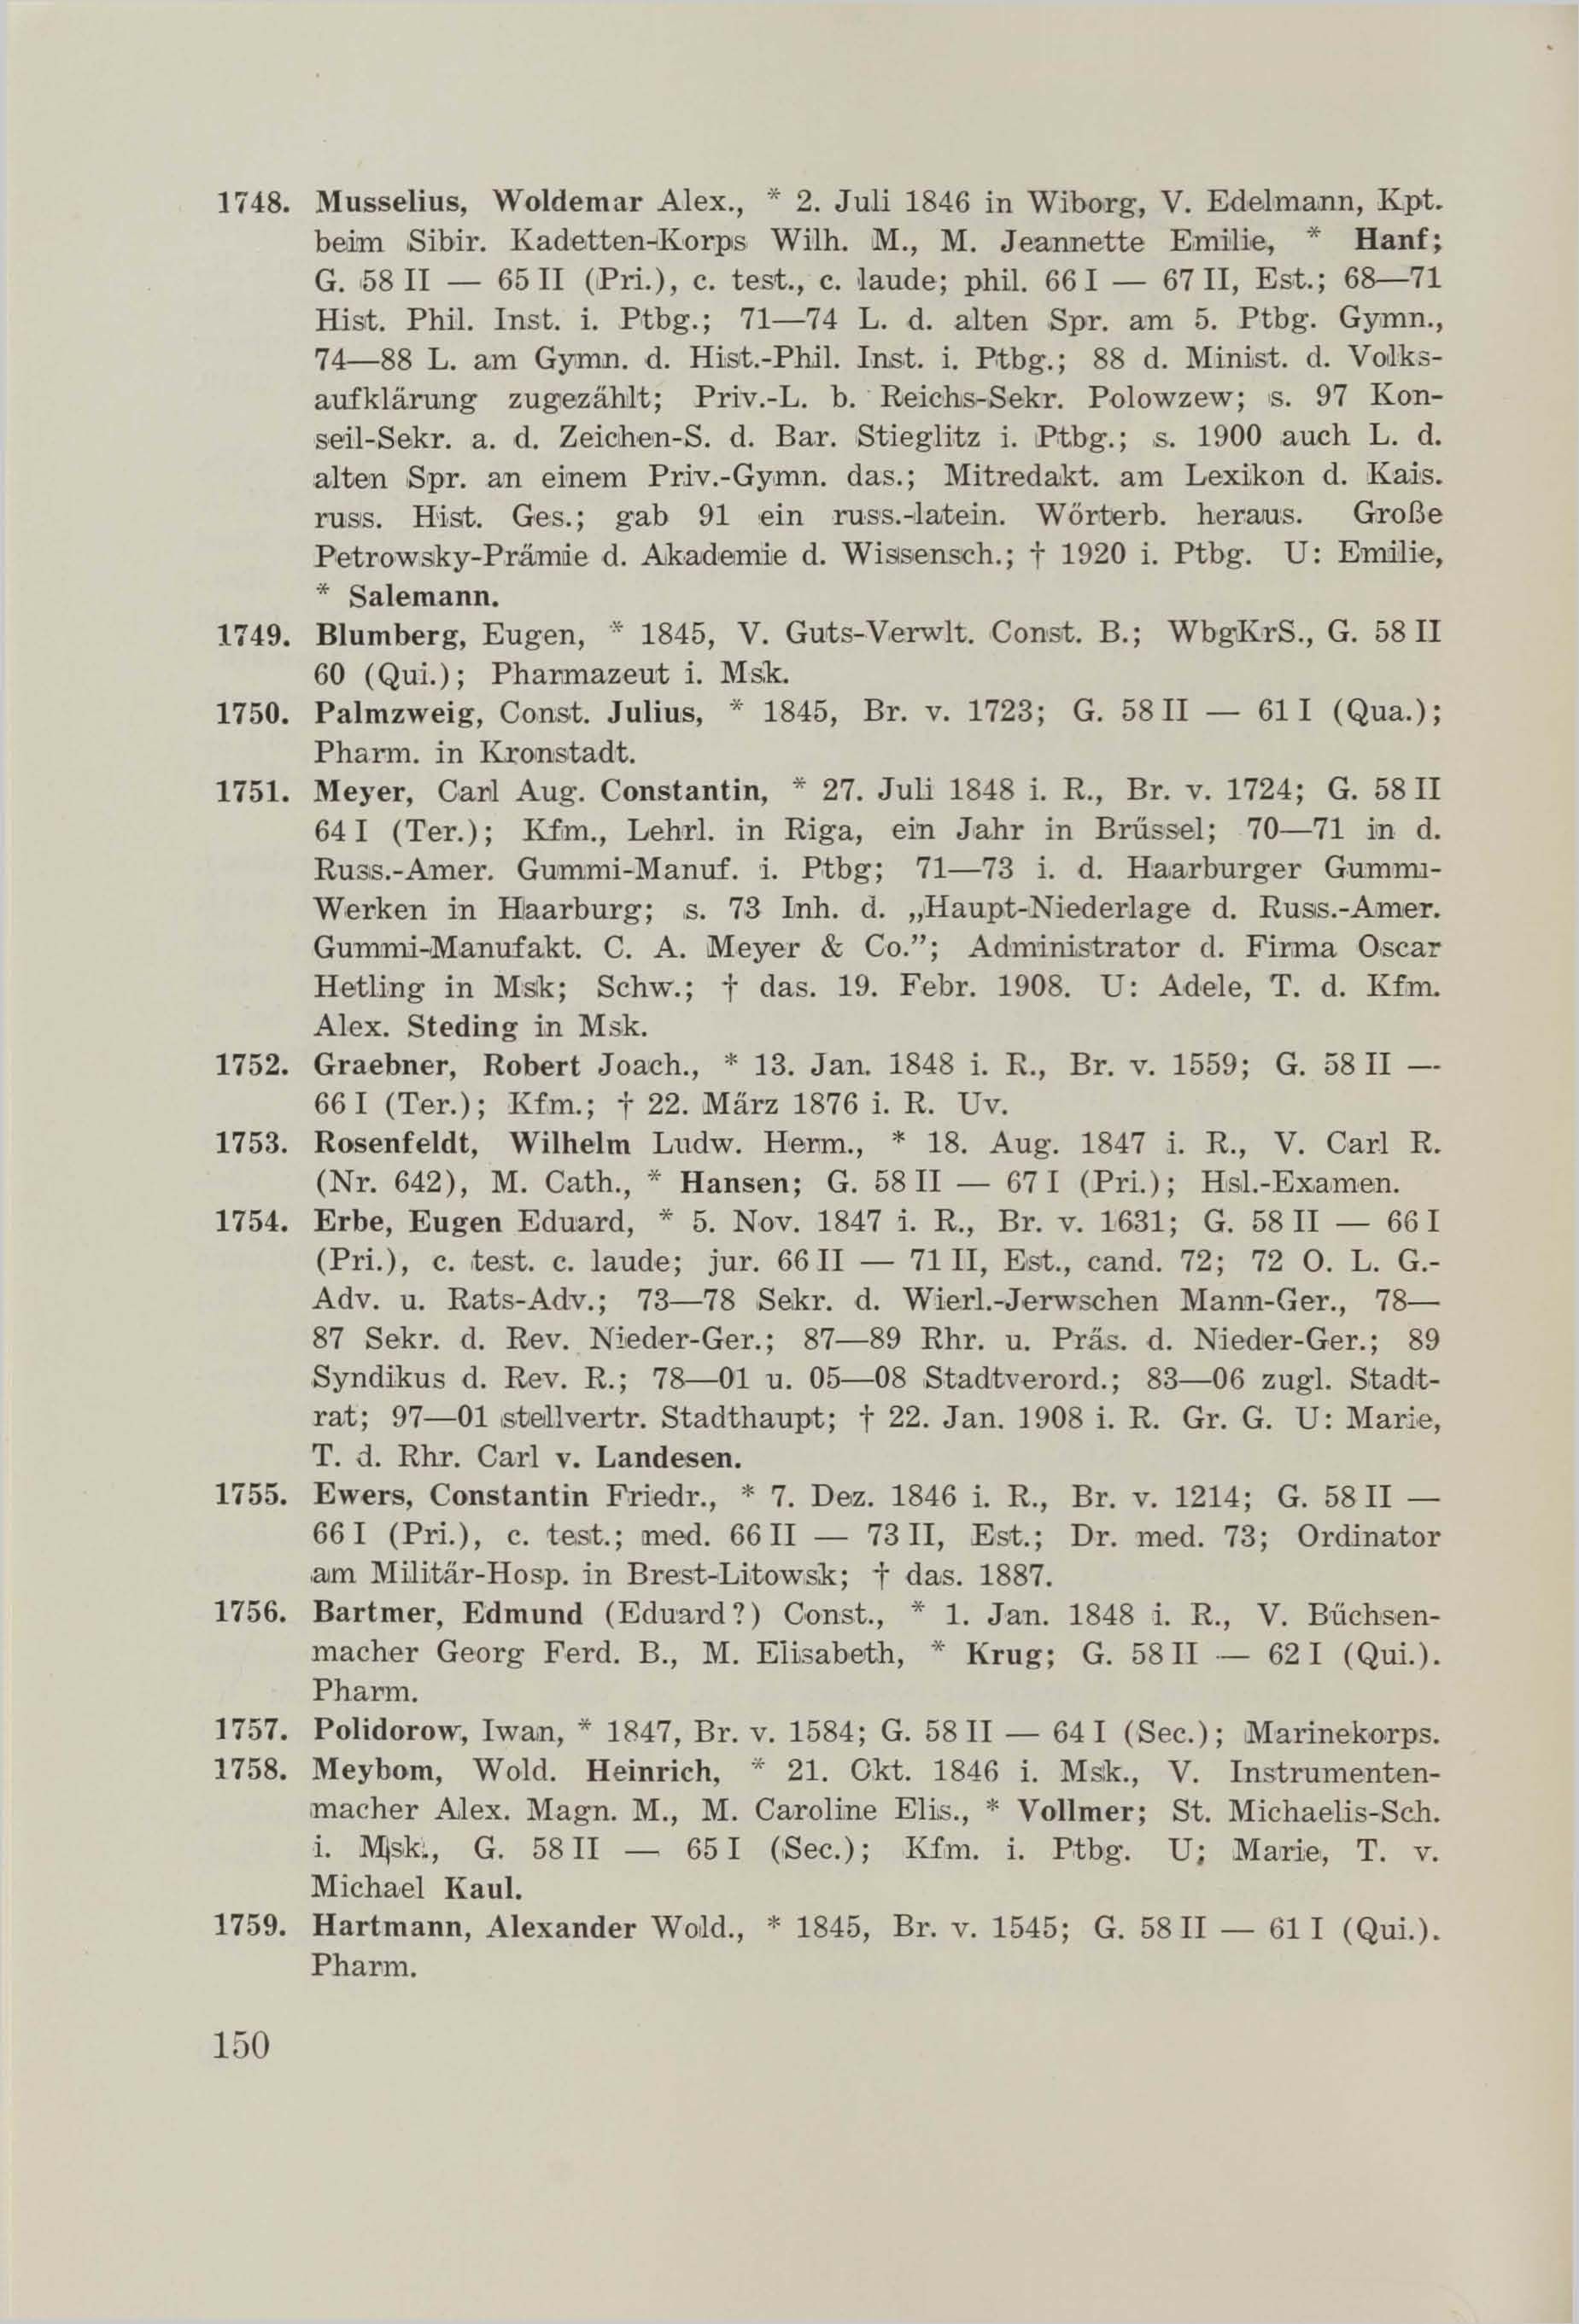 Schüler-Verzeichnis des Revalschen Gouvernements-Gymnasiums 1805–1890 (1931) | 160. (150) Main body of text